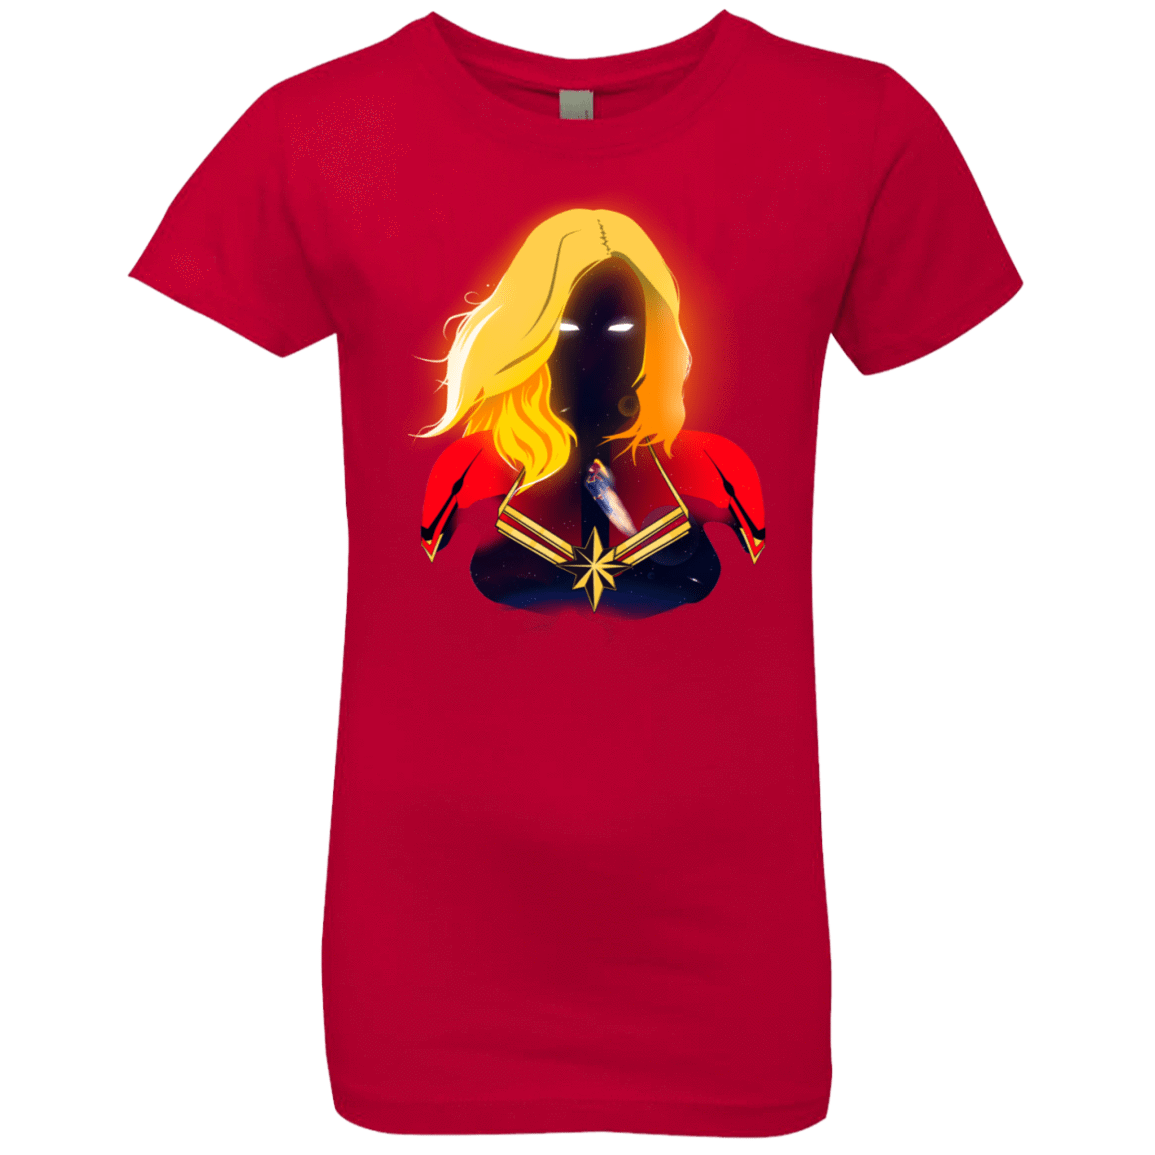 T-Shirts Red / YXS M A R V E L Girls Premium T-Shirt